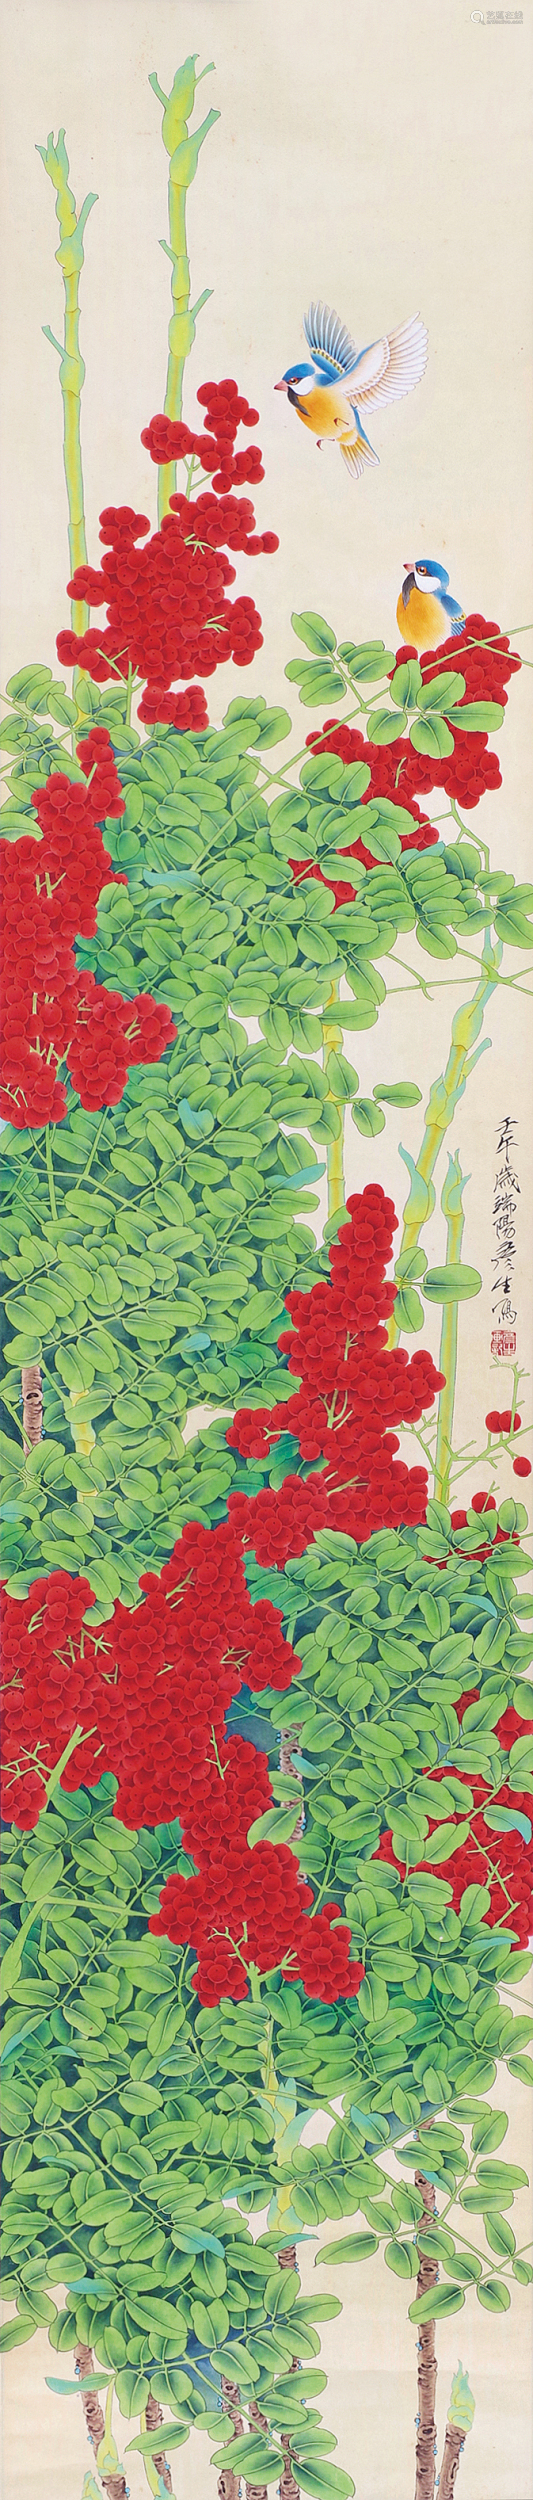 周彦生(b.1942) 花鸟 立轴 设色纸本